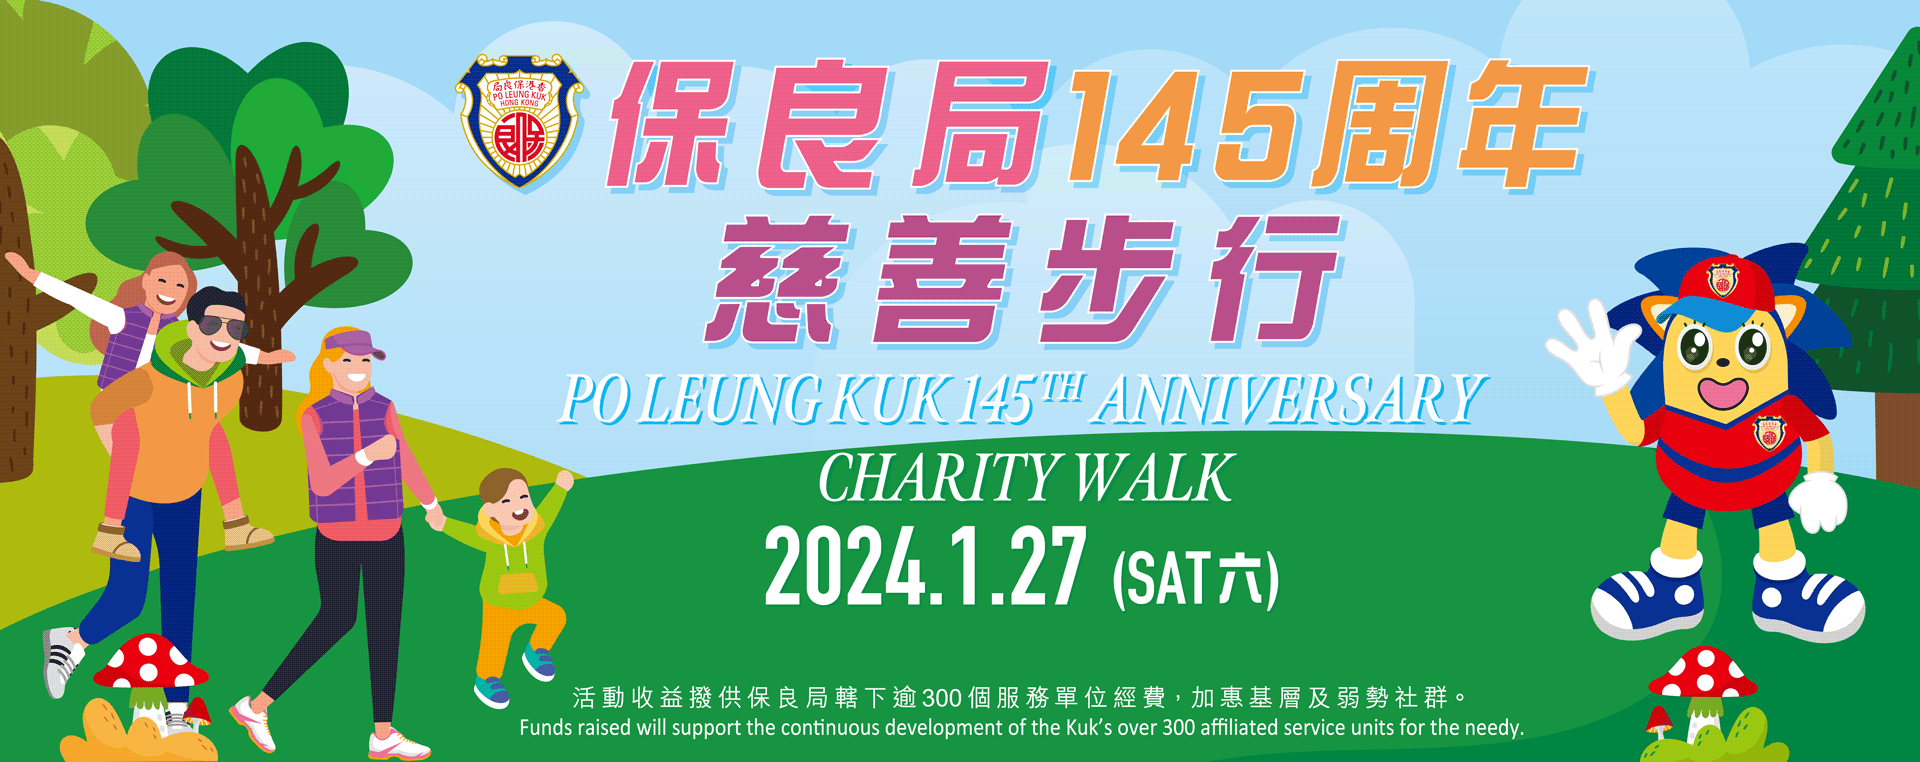 145 walk banner 